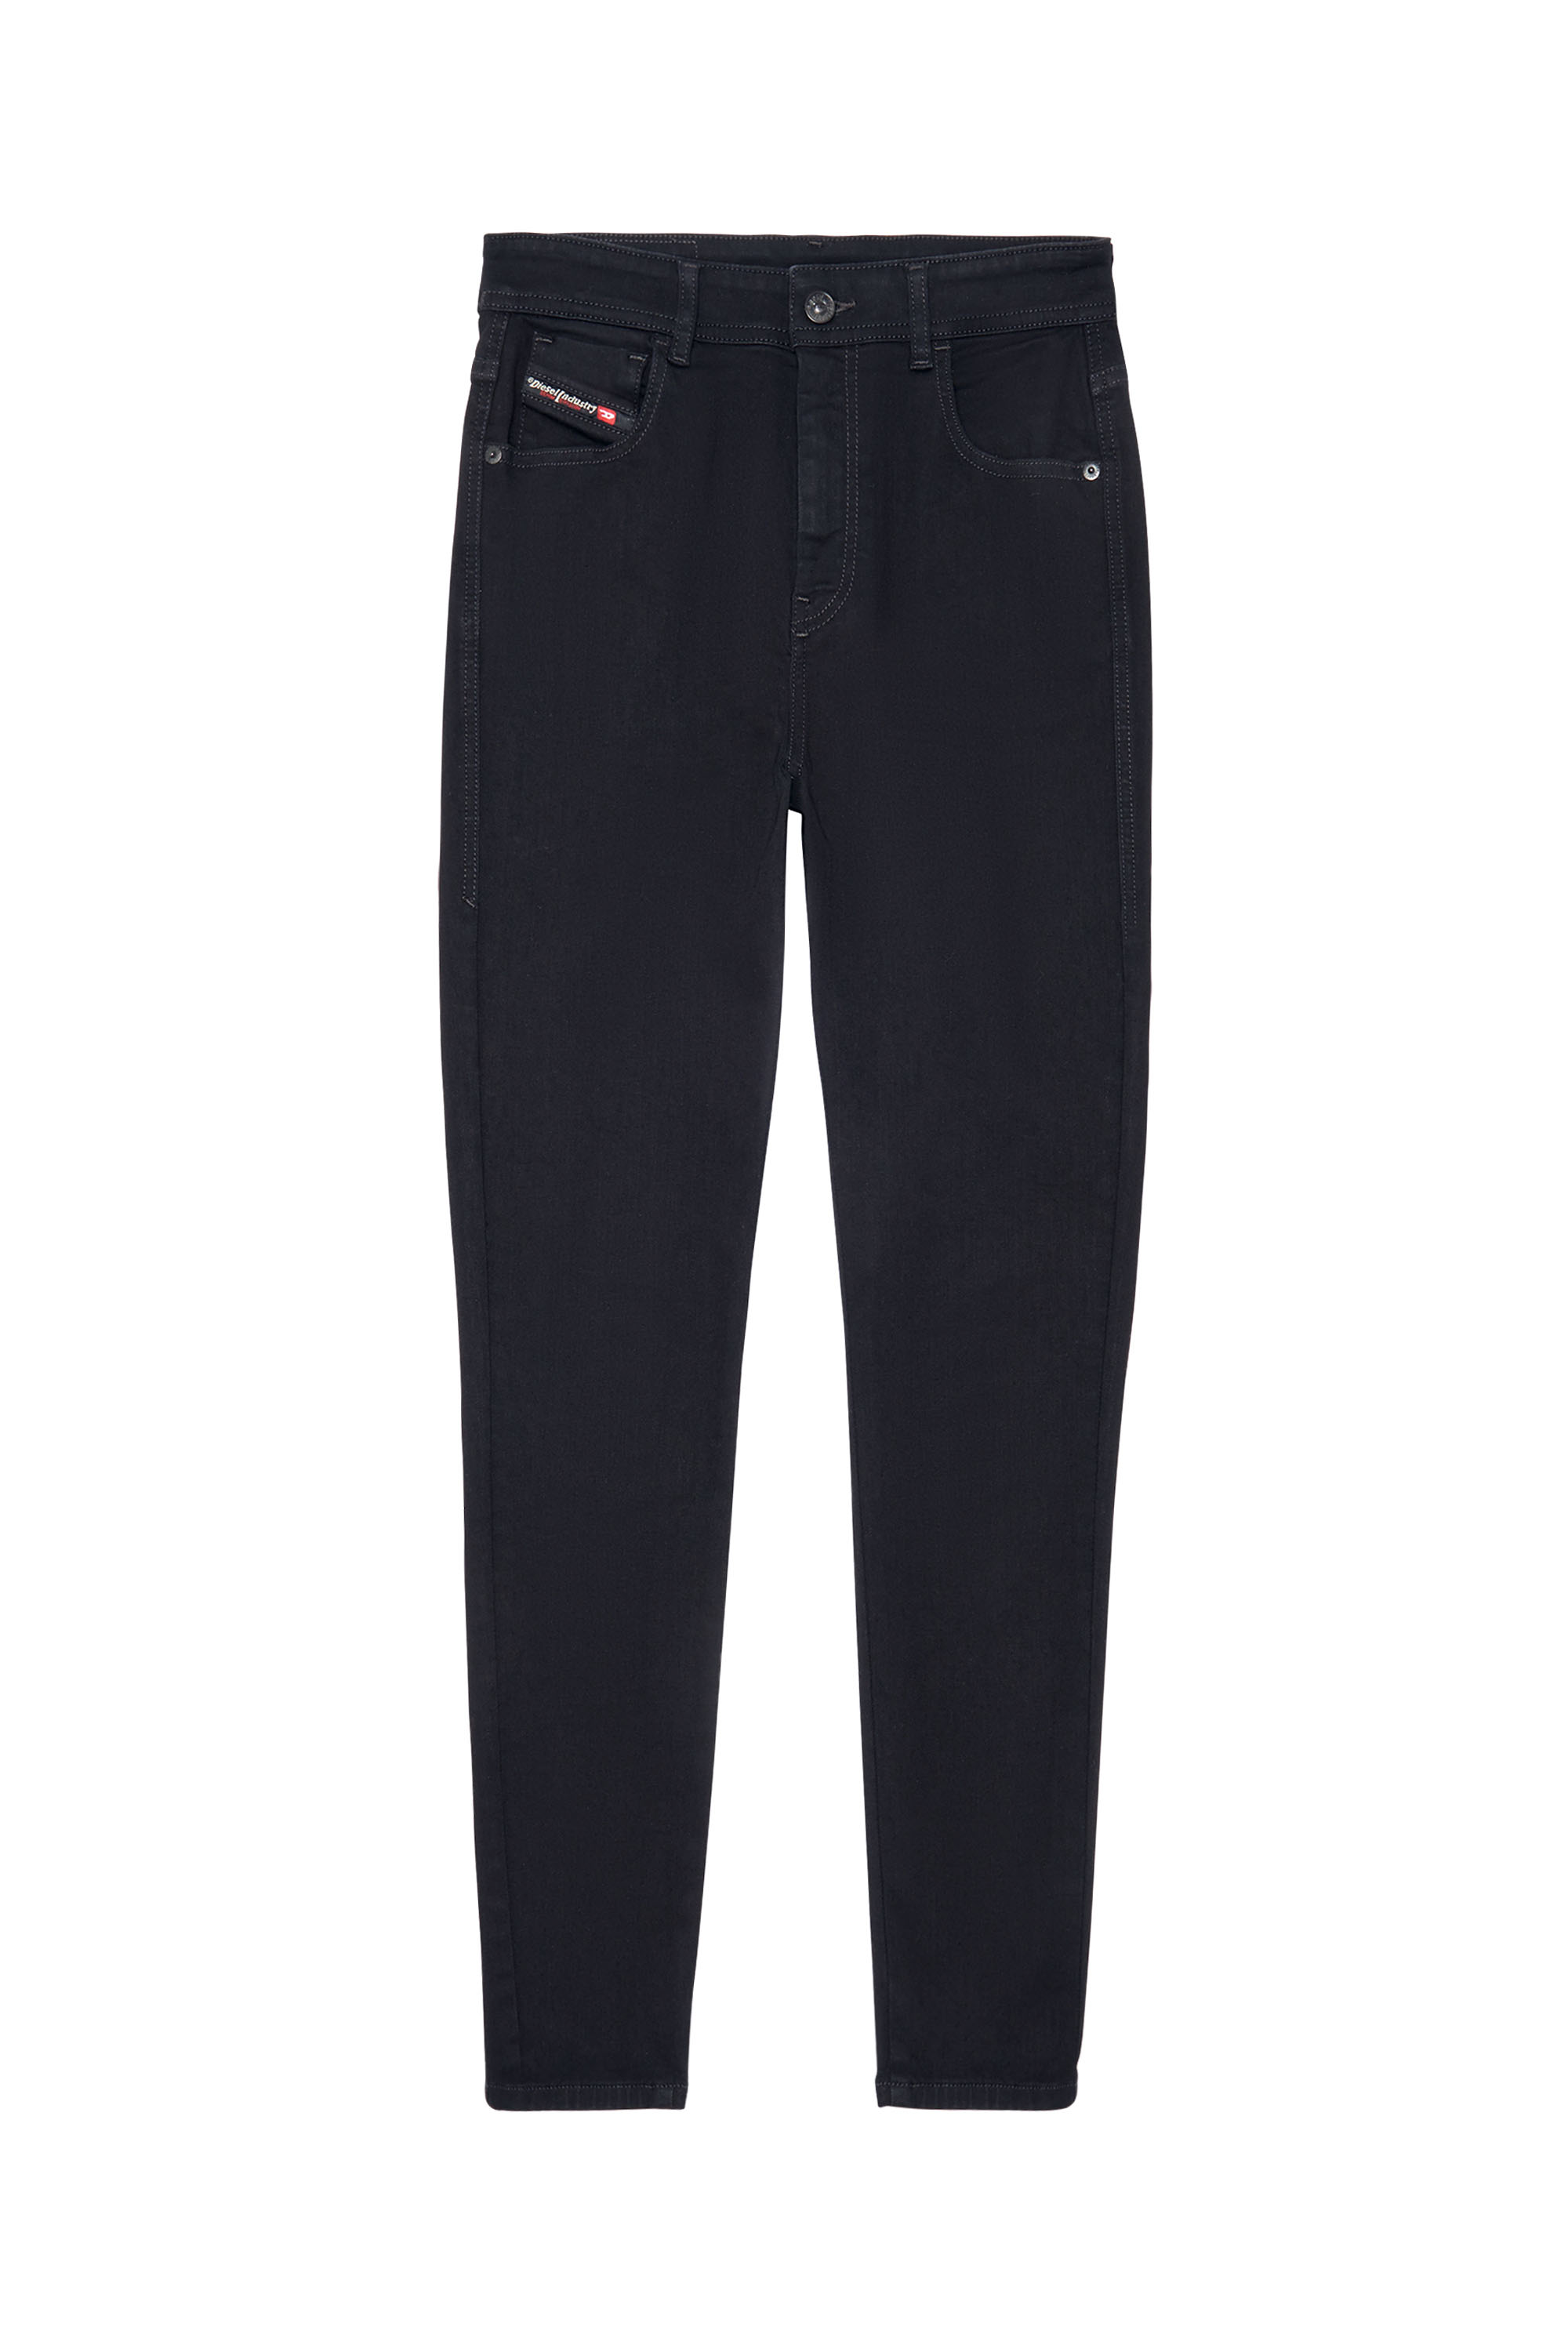 Diesel - Woman Super skinny Jeans 1984 Slandy-High 069EF, Black/Dark grey - Image 3